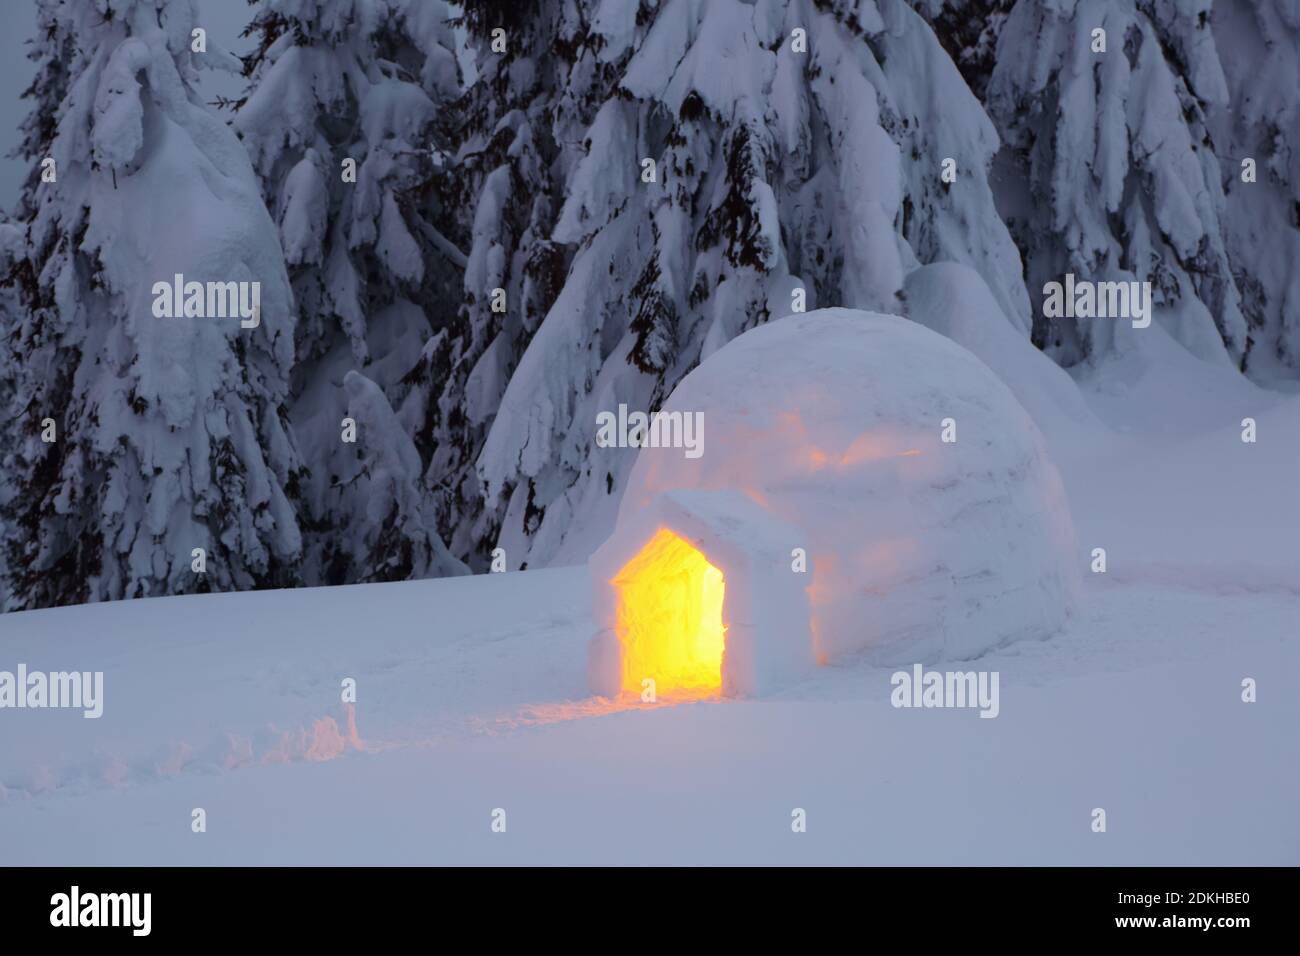 Iglu steht auf dem verschneiten Rasen. Nacht Winter Berglandschaften. Haus mit Licht. Lage Ort der Karpaten, Ukraine, Europa. Stockfoto